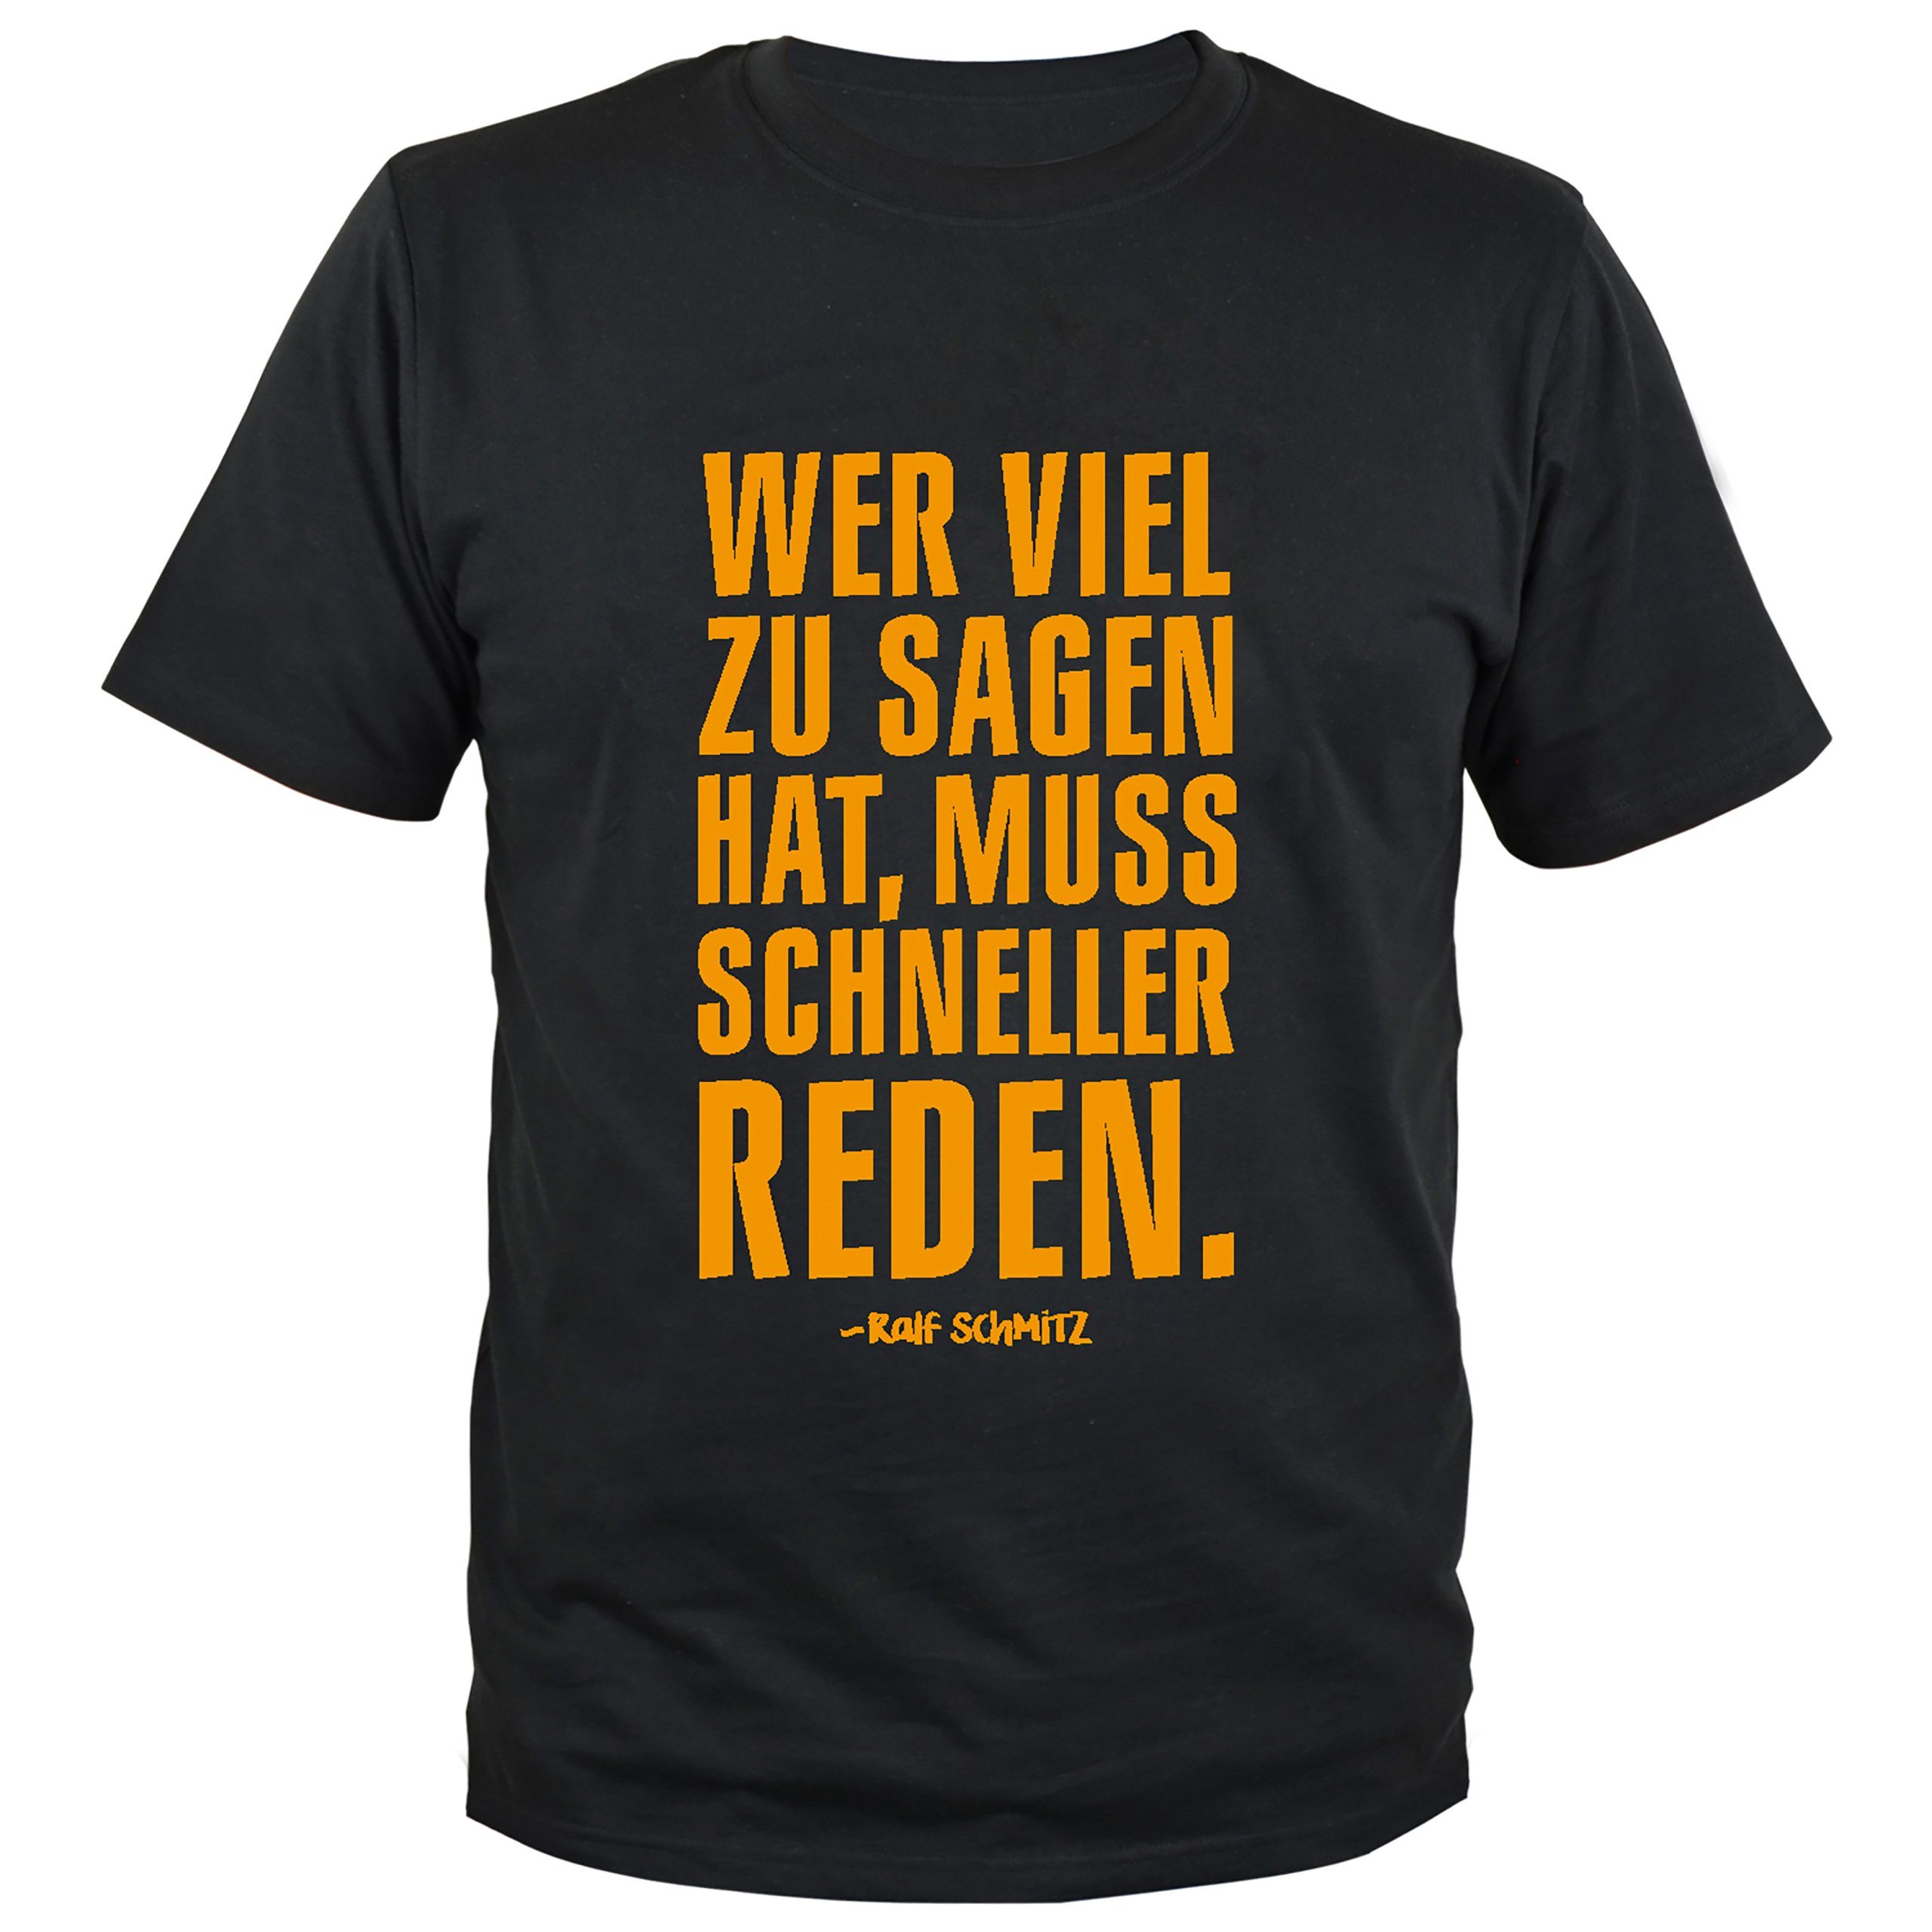 United Labels® T-Shirt Ralf Schmitz T-Shirt - Wer viel zu sagen hat...  Schwarz